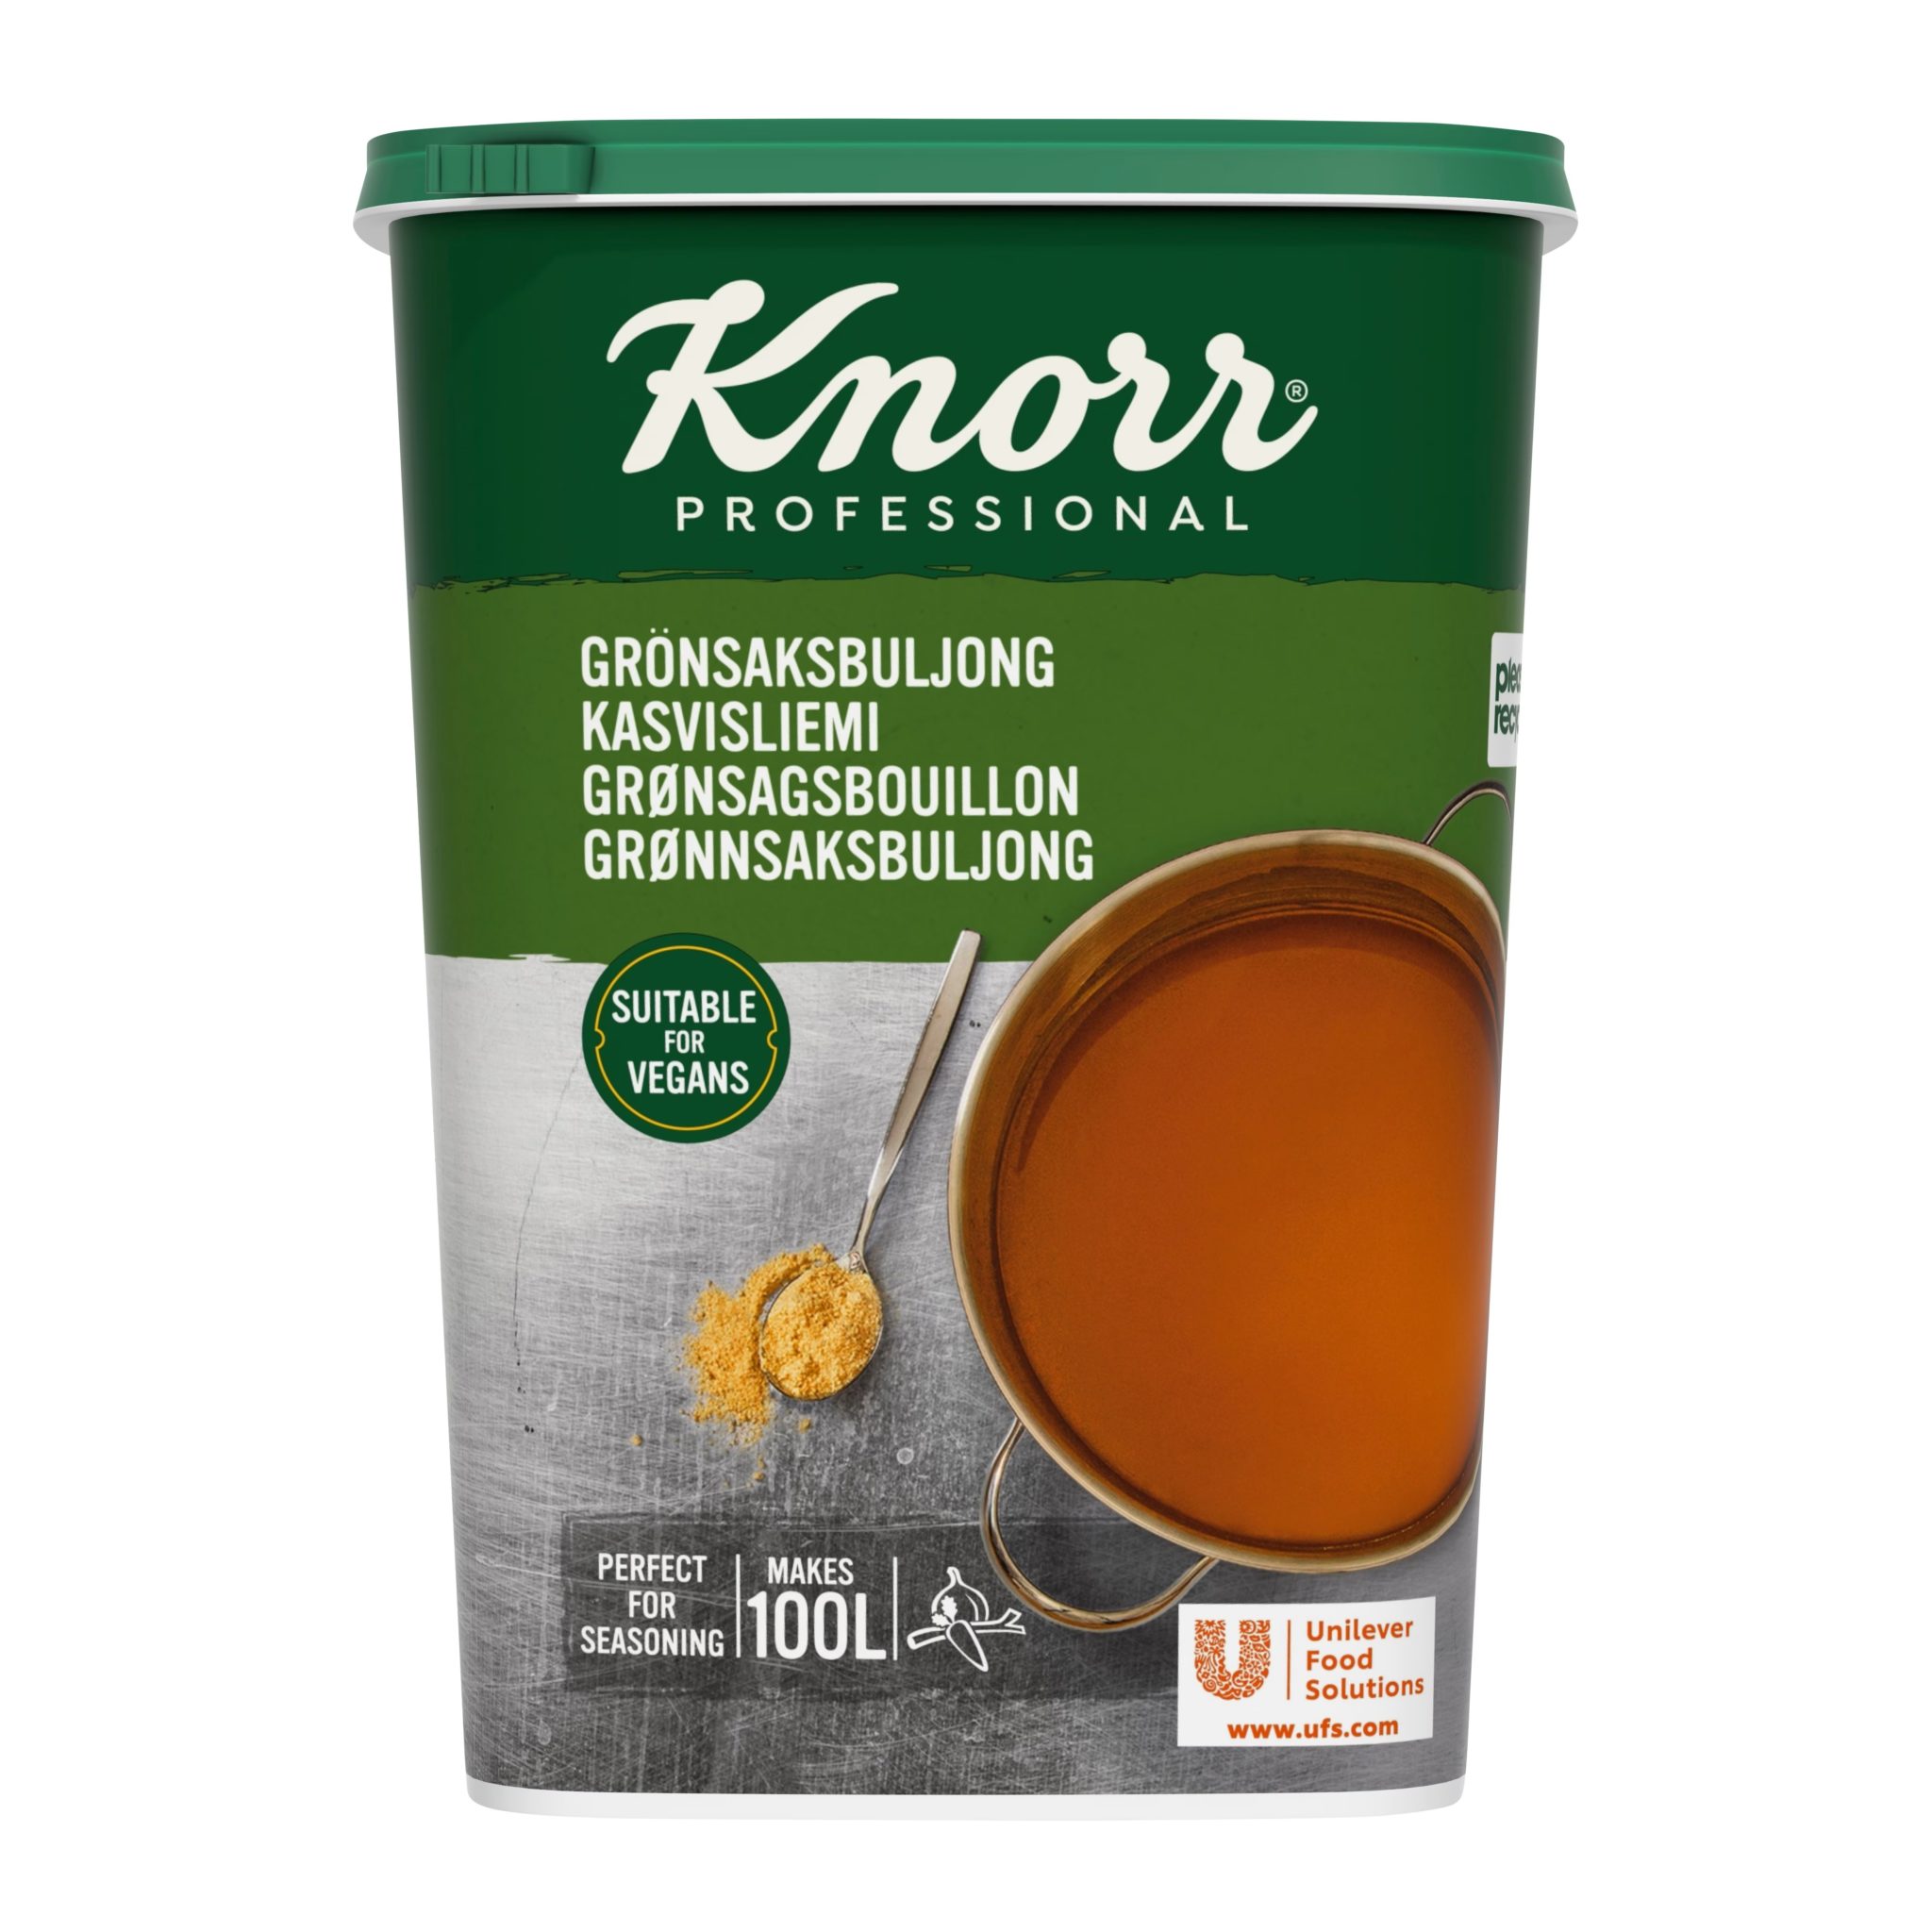 Knorr Grænmetiskraftur þurr 1,5kg (3)